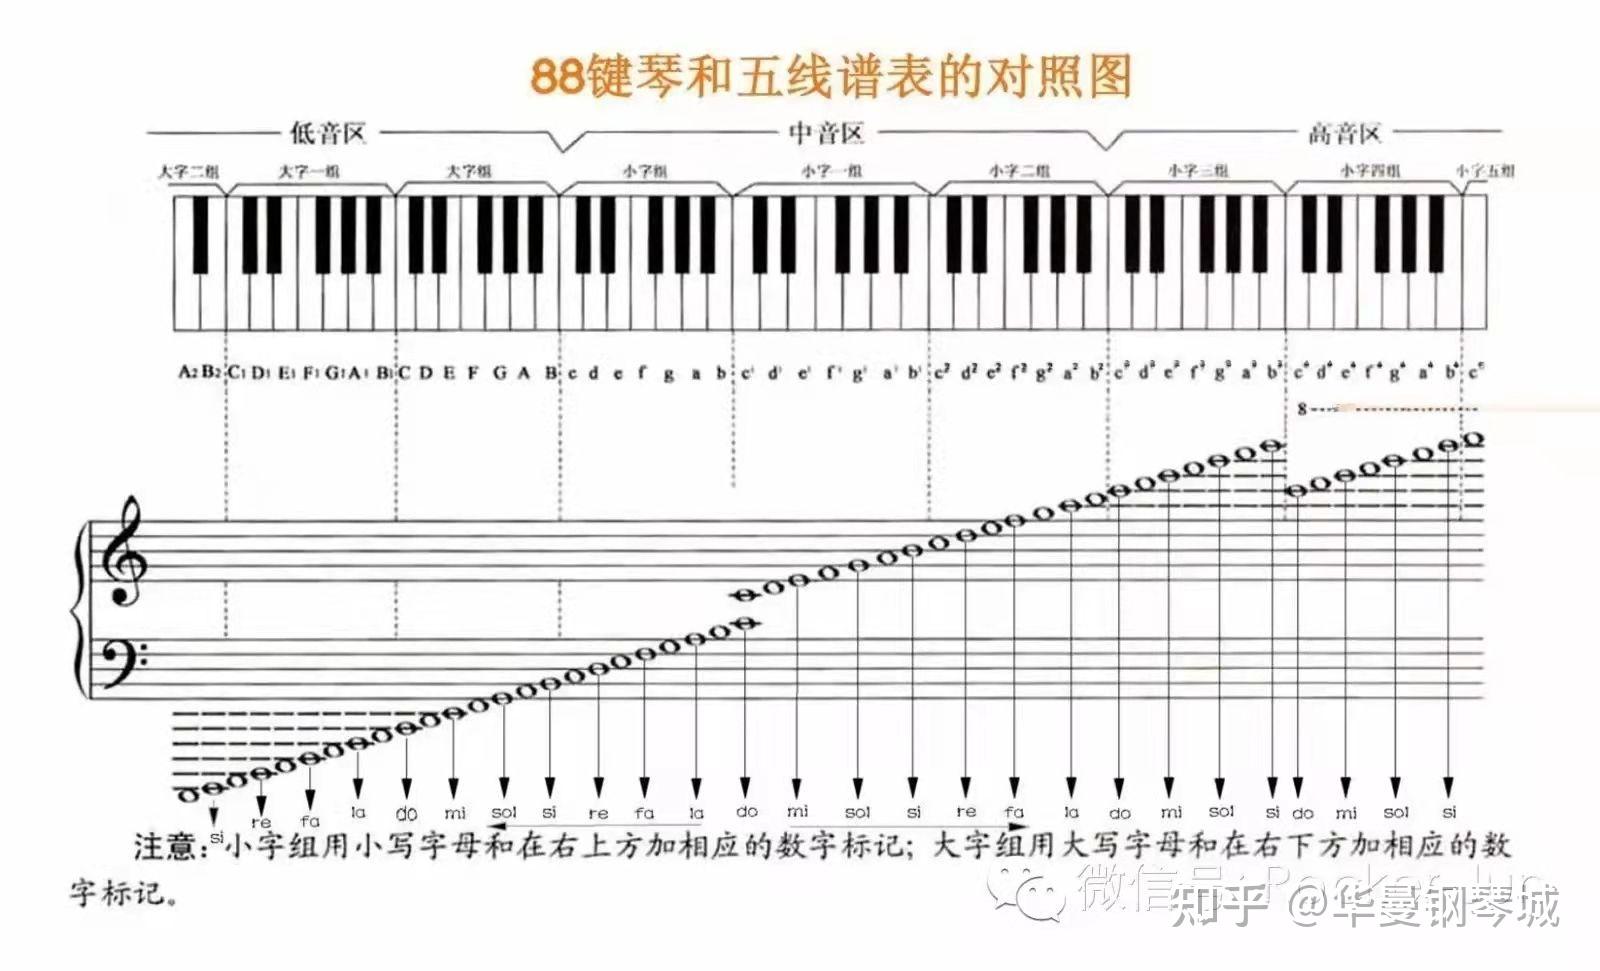 为什么钢琴有88个琴键? 